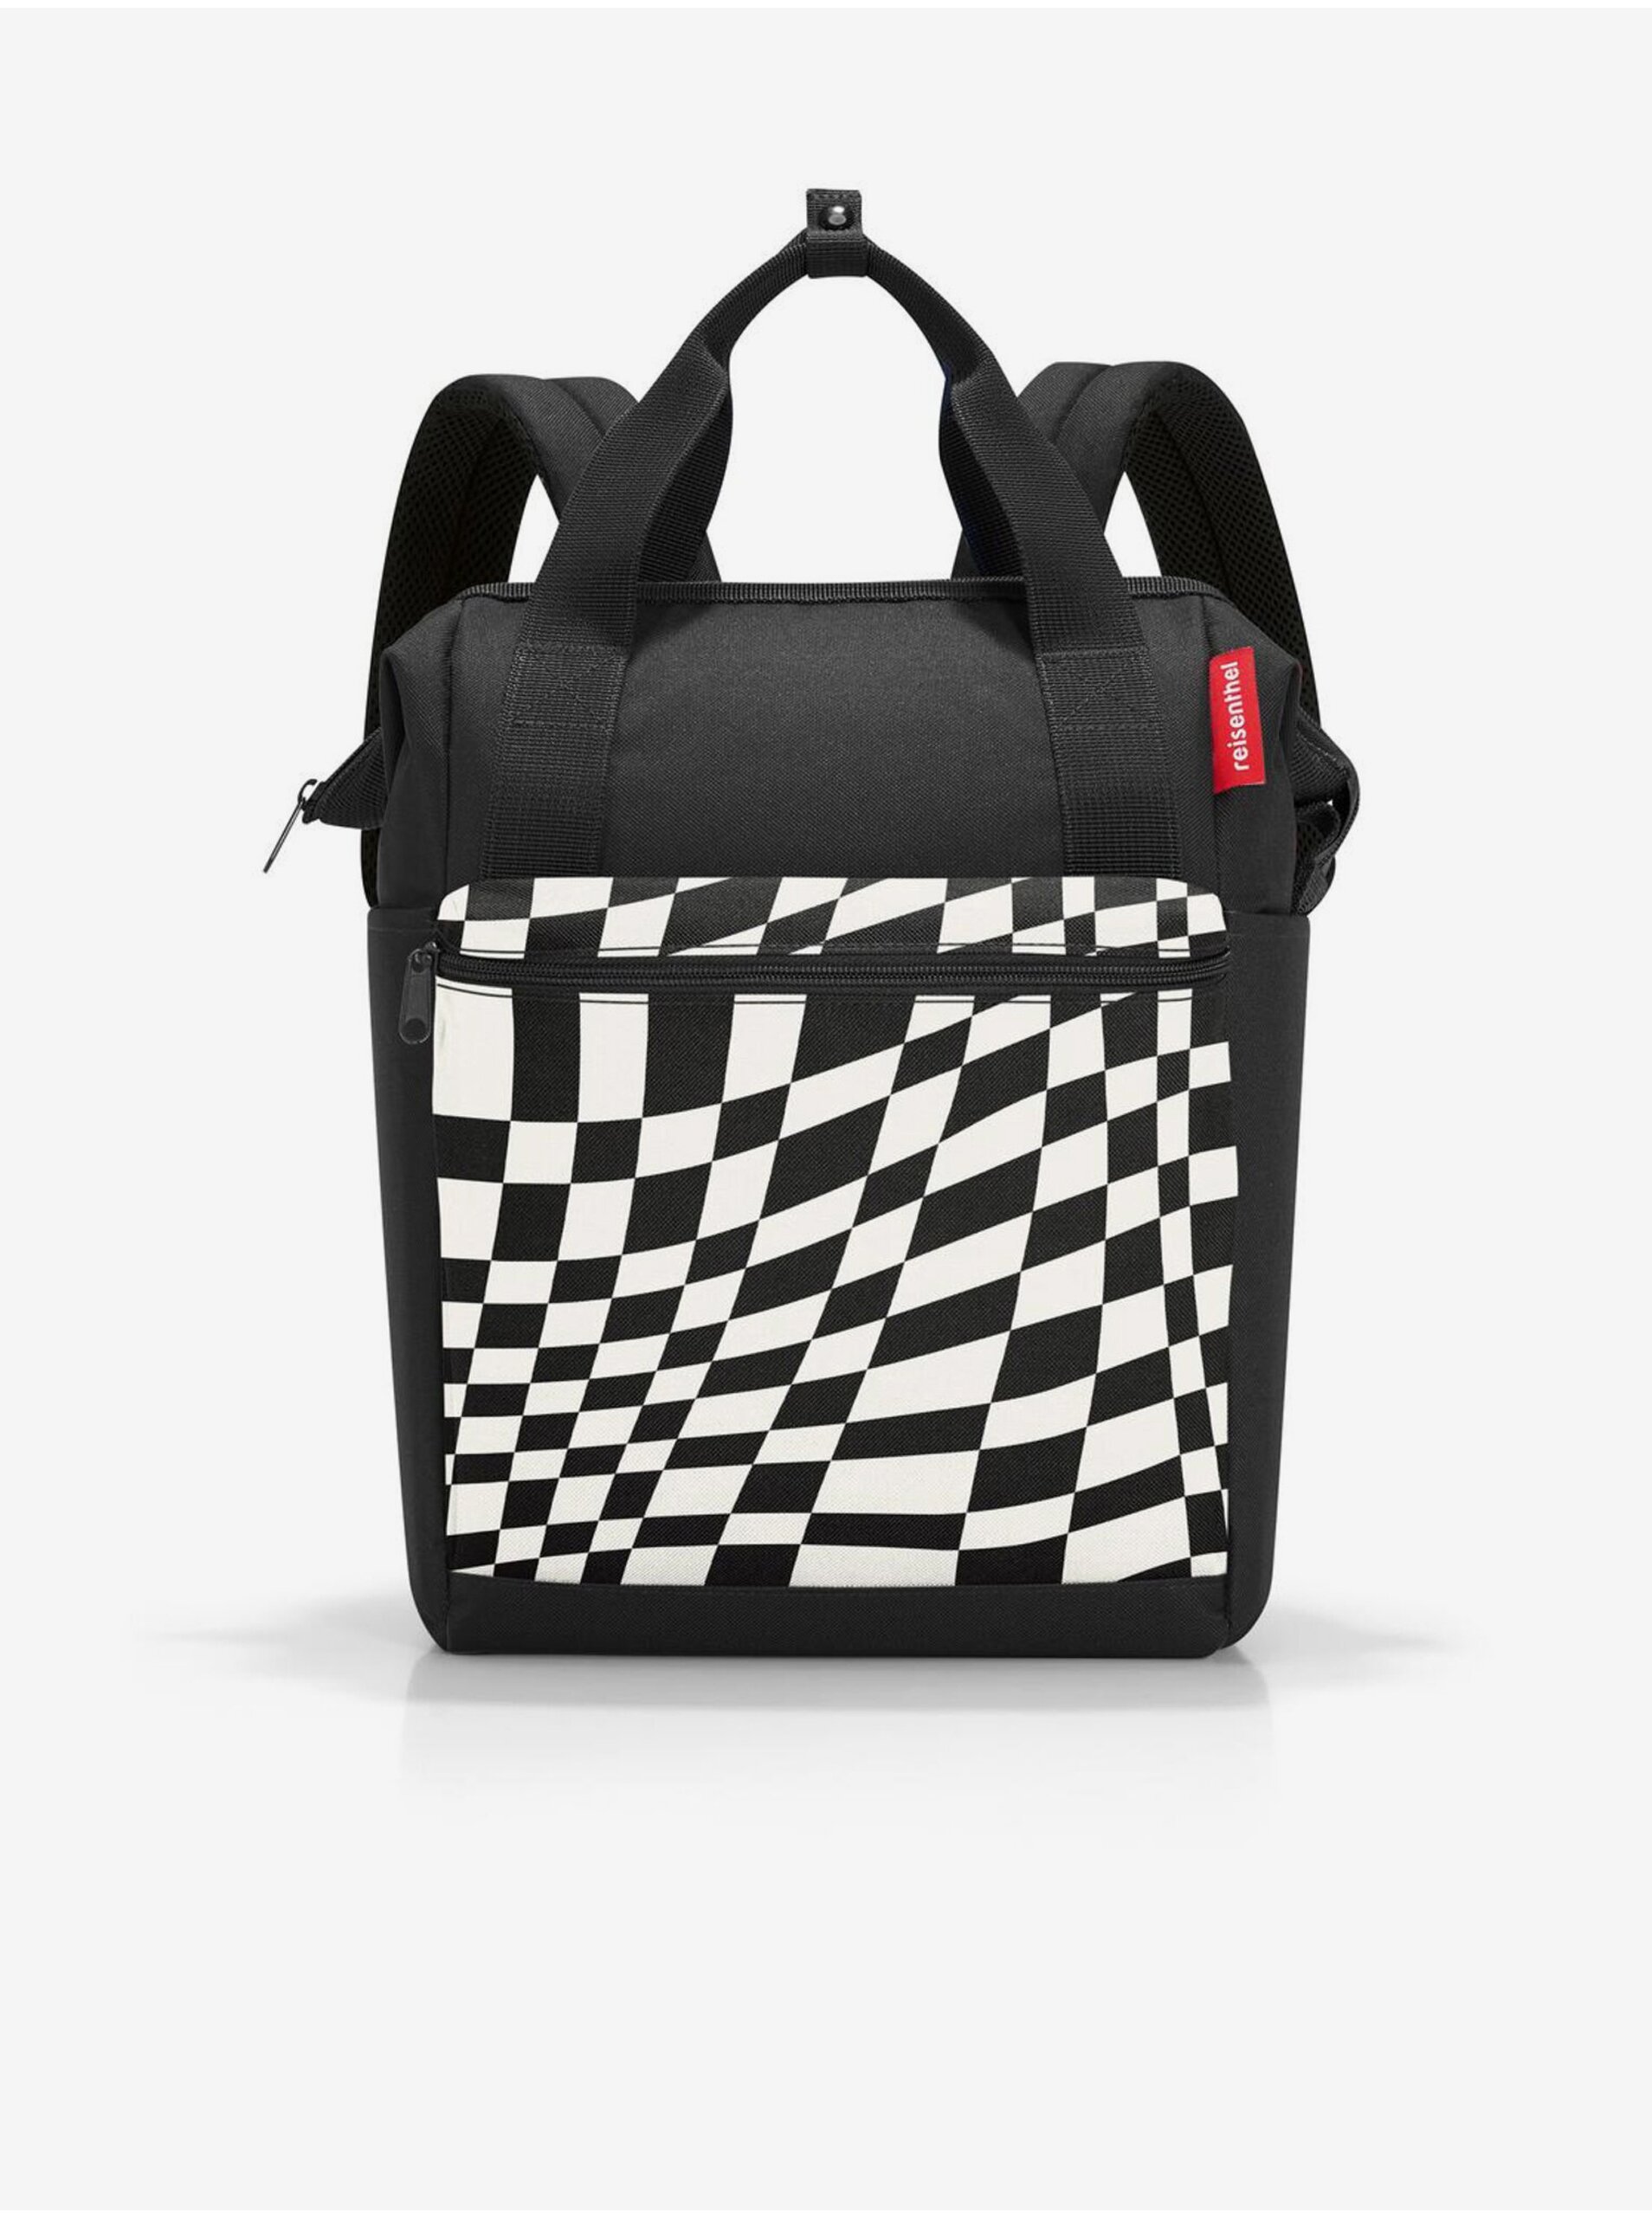 Lacno Bielo-čierny vzorovaný batoh a taška 2v1 Reisenthel Allrounder R Op-Art